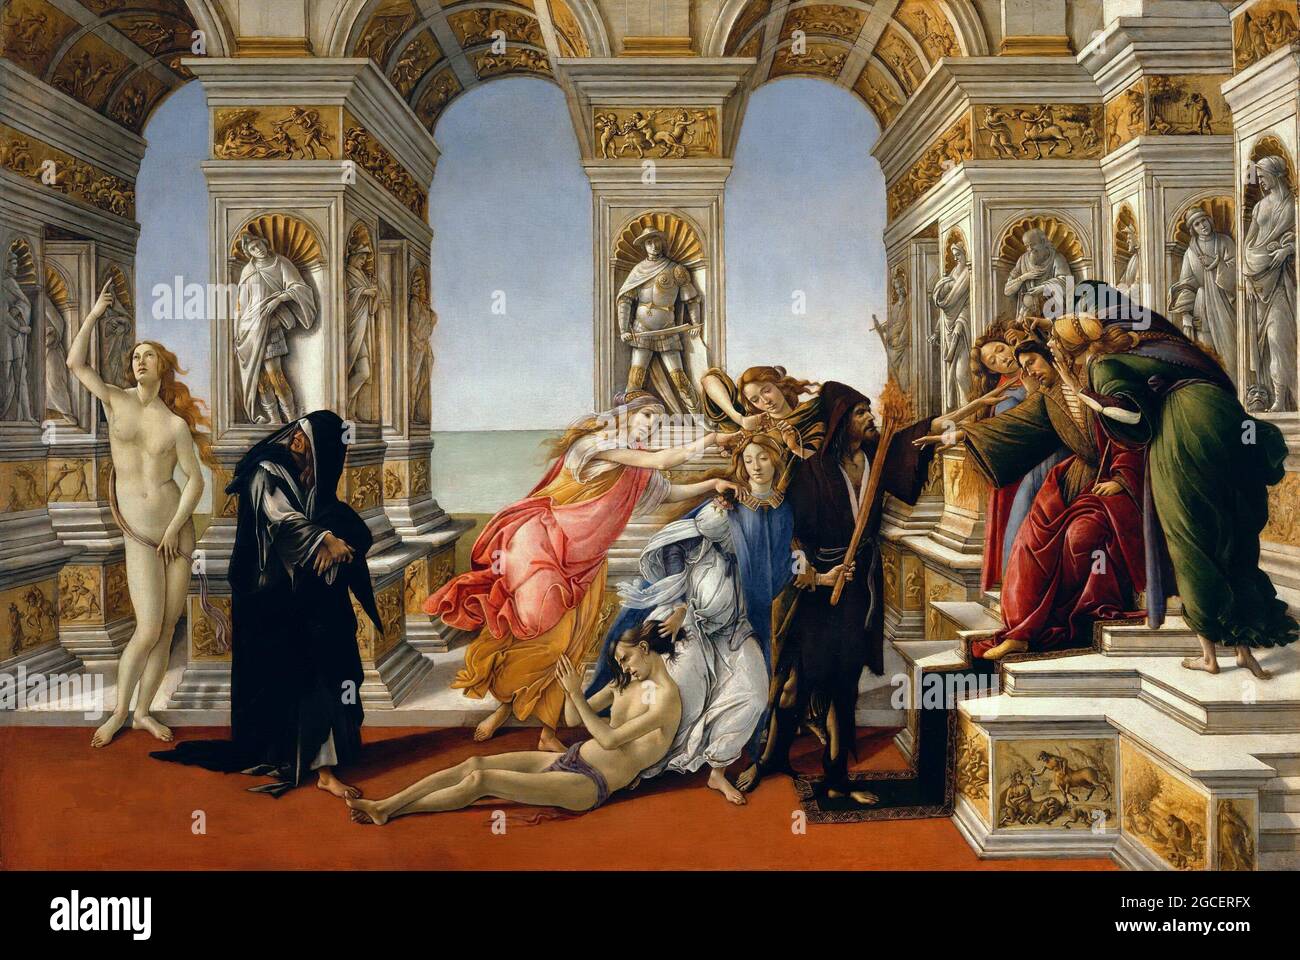 Titre: Calomny des Apelles Créateur: Sandro Botticelli Date: 1497-98 Moyen: Huile sur panneau dimension: 62x91 cms lieu: Galleria degli Uffizi, Florence, Toscane, Italie Banque D'Images